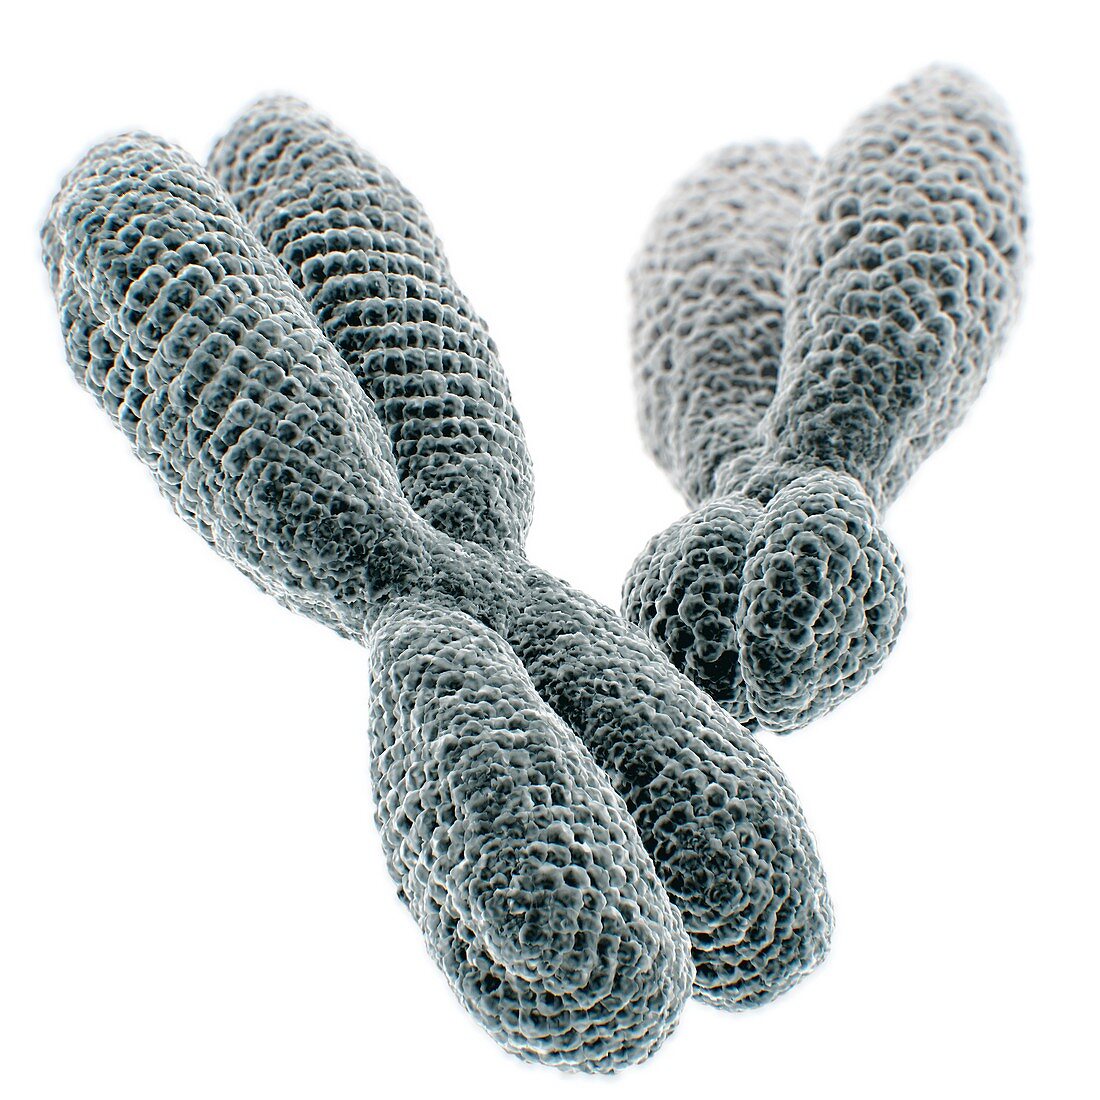 XY chromosomes, illustration